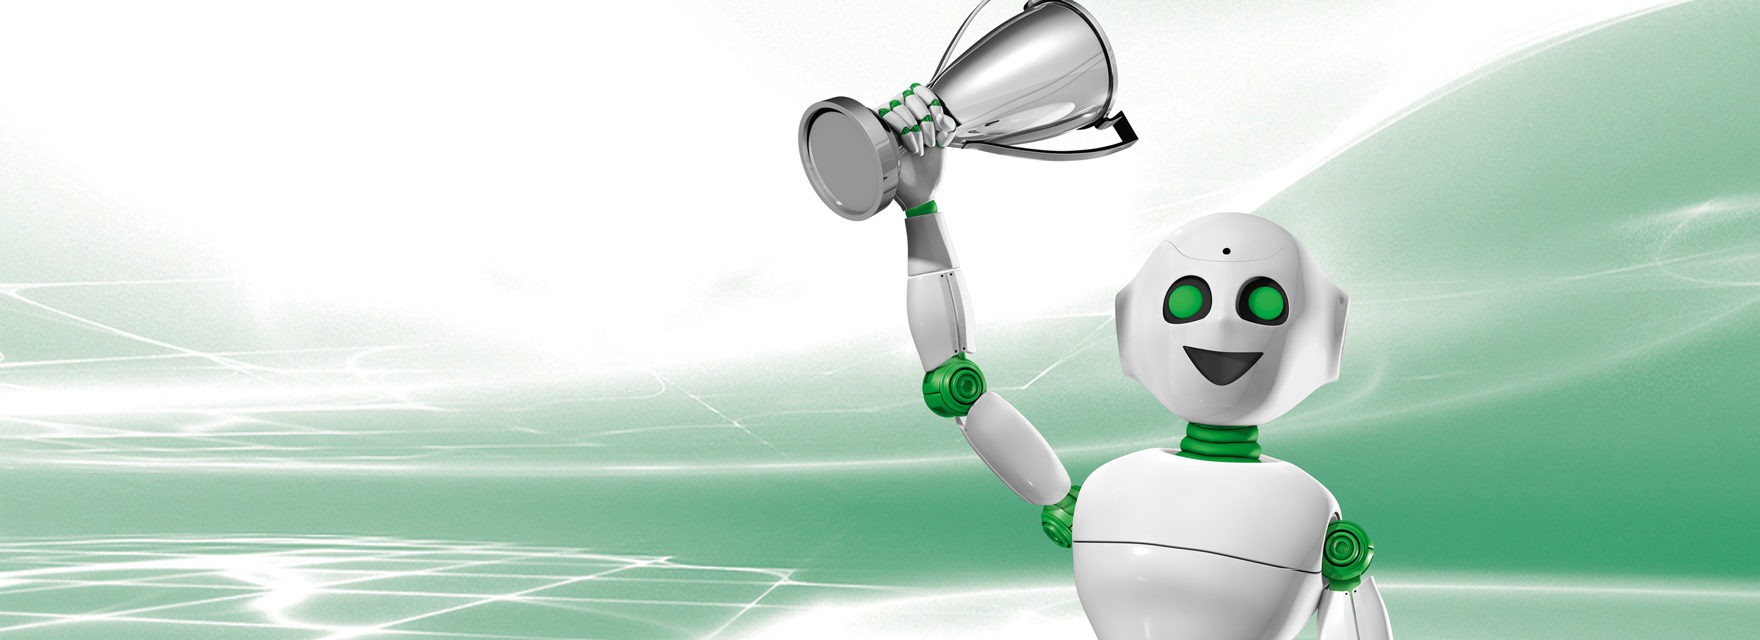 Nori der Roboter hebt mit einer Hand einen Pokal in die Luft